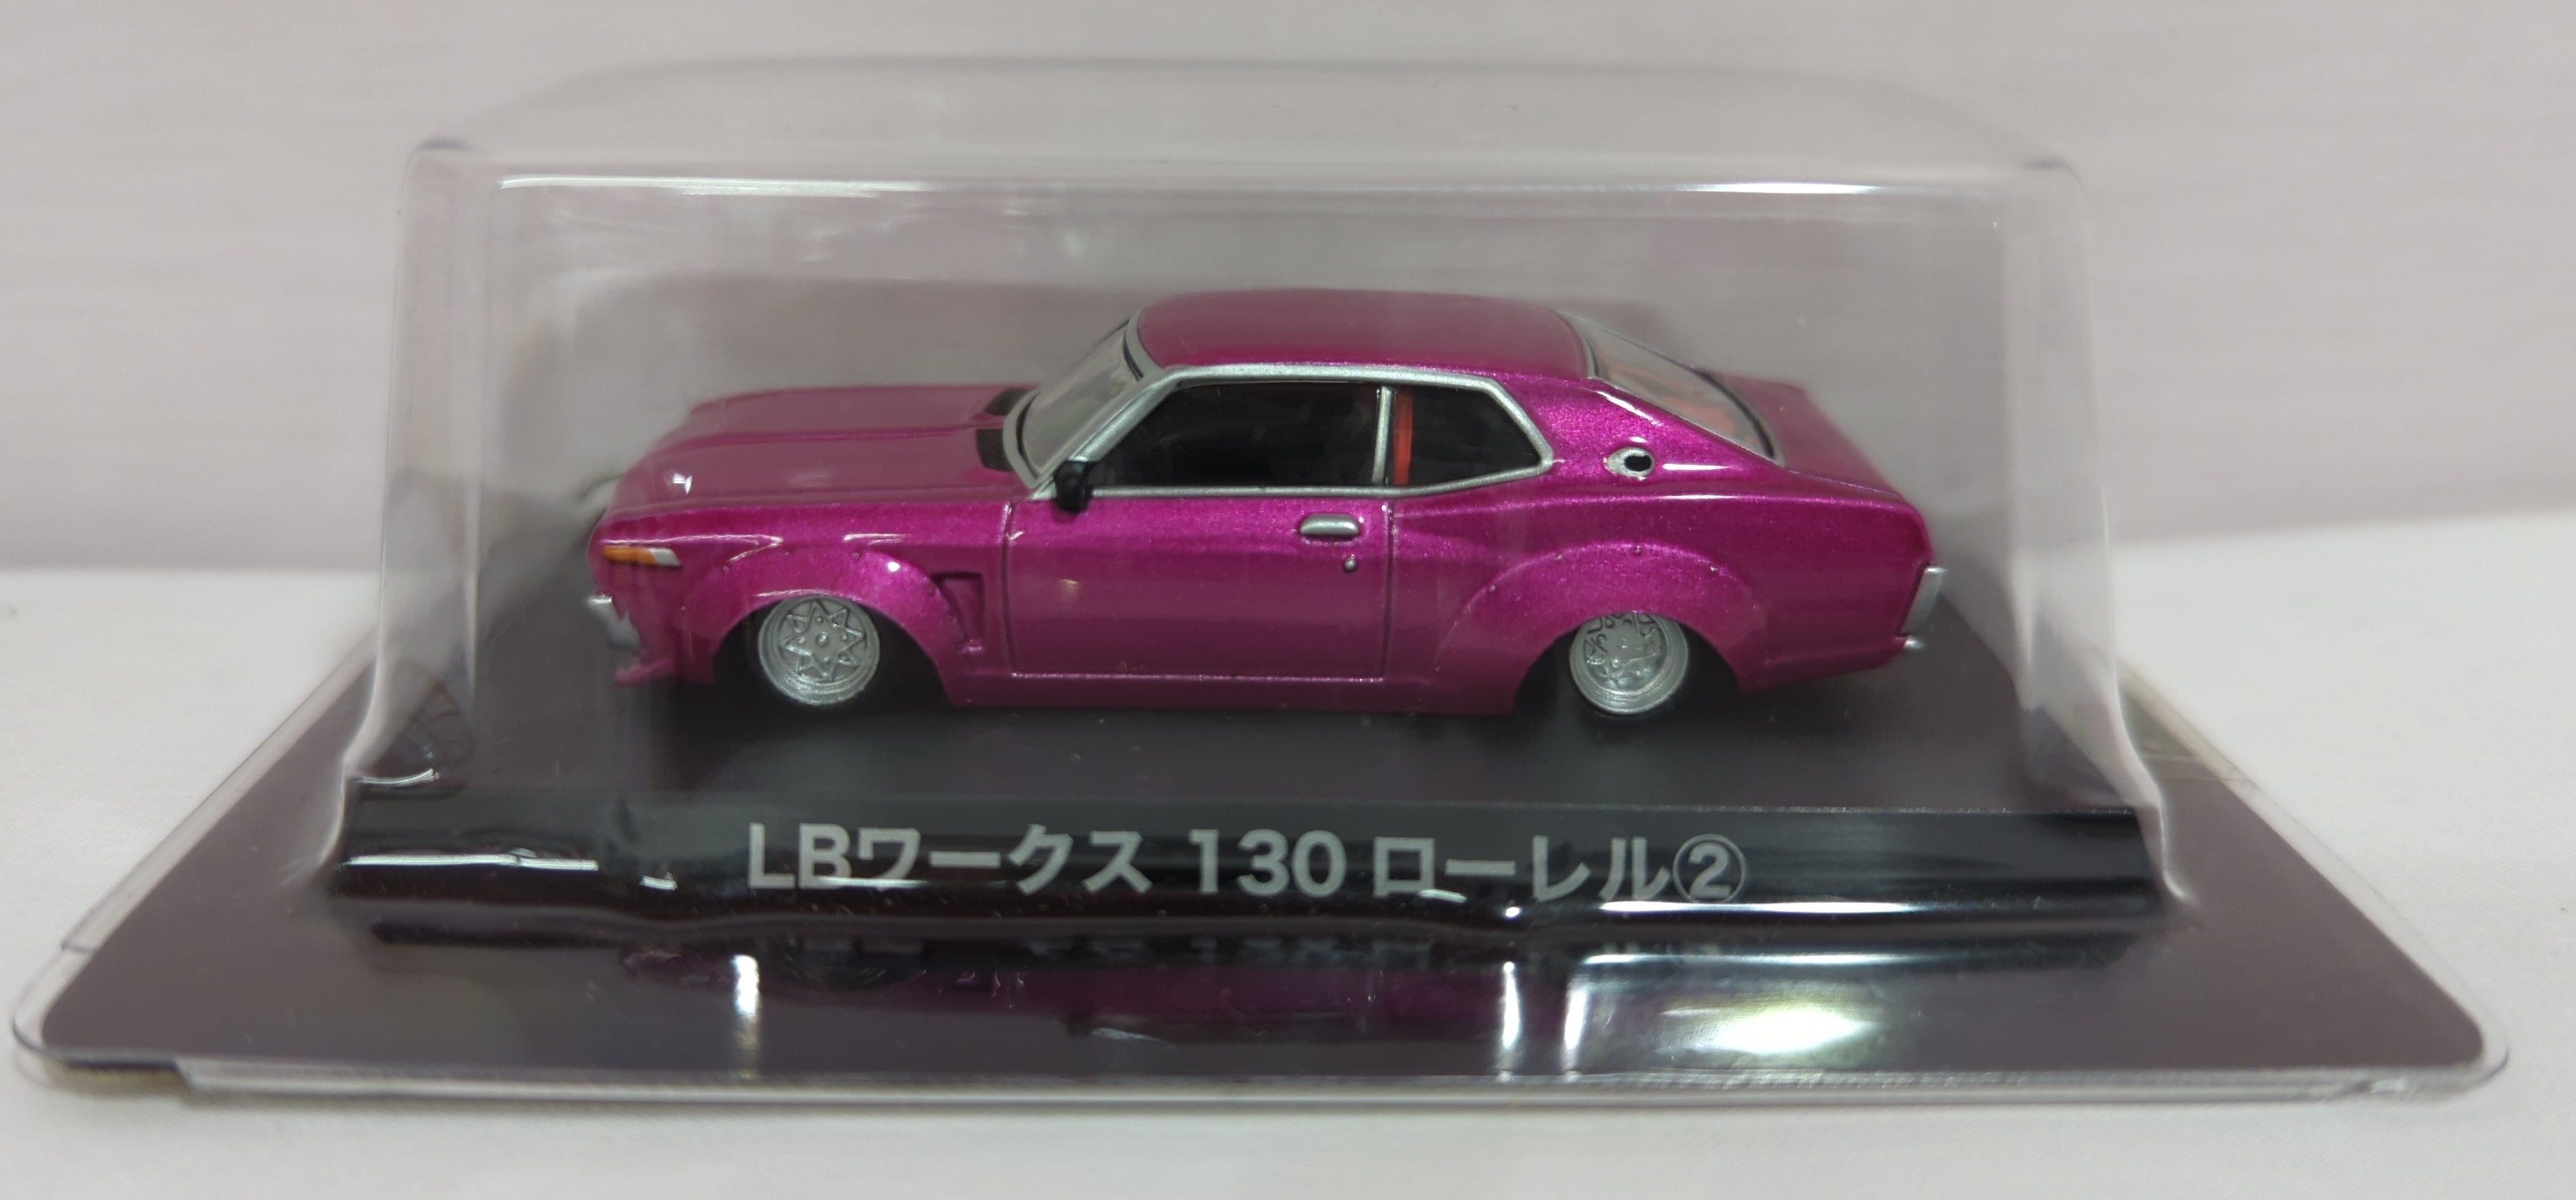 アオシマ グラチャンコレクション 13 日産 ローレル - ミニカー